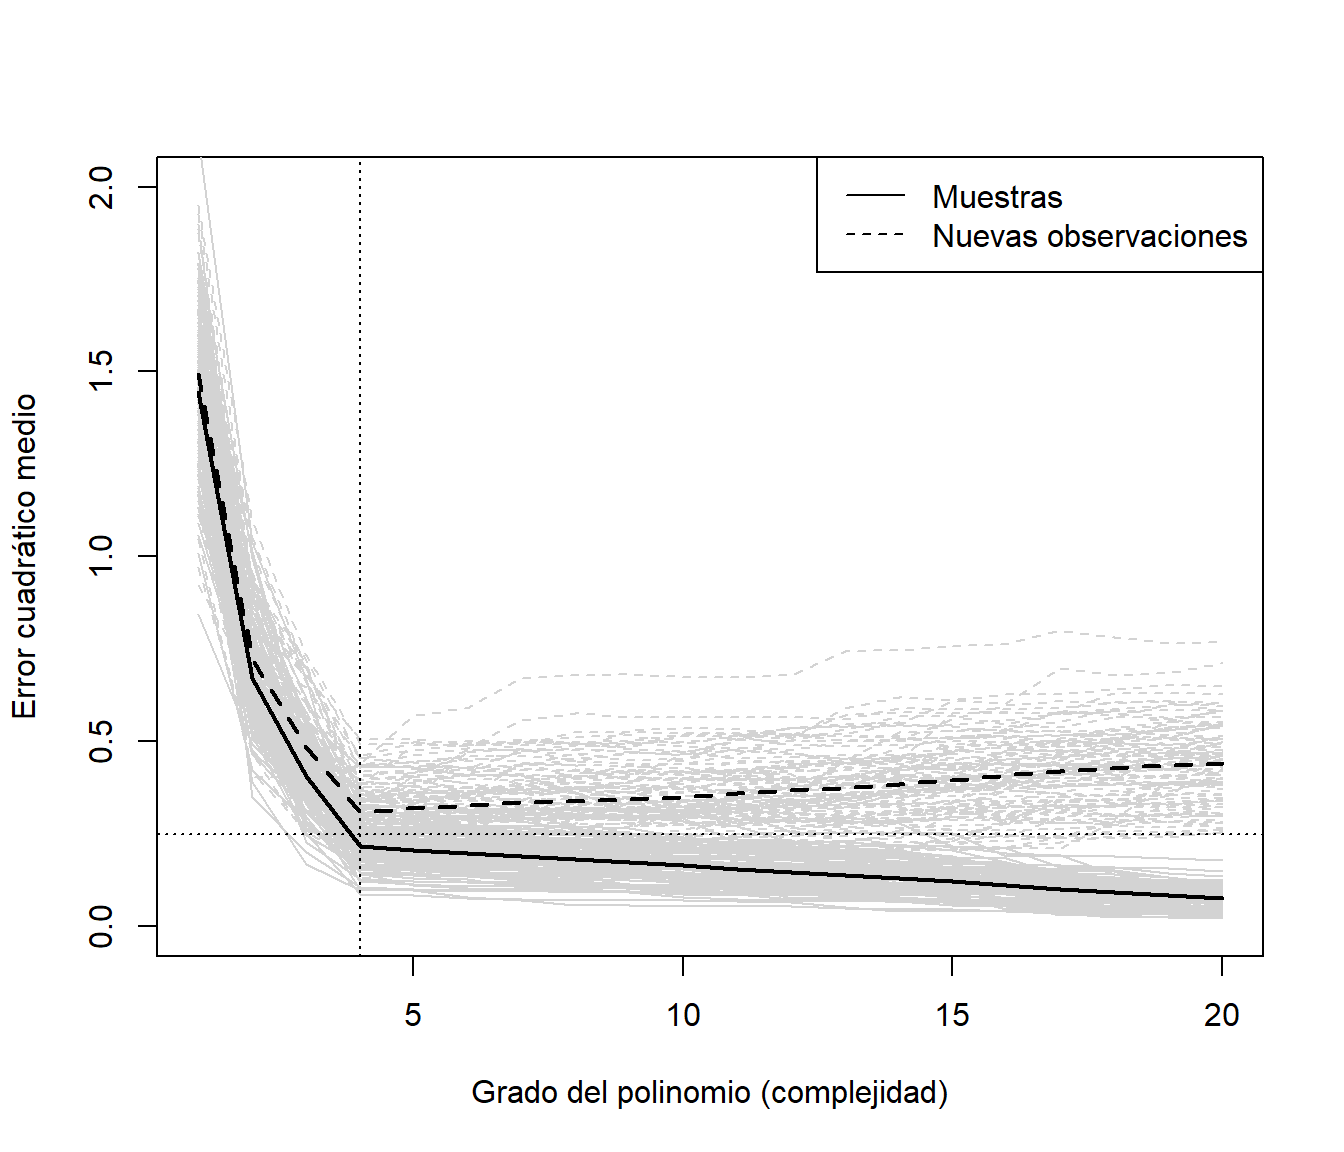 Precisiones (errores cuadráticos medios) de ajustes polinómicos variando la complejidad, en las muestras empleadas en el ajuste y en nuevas observaciones (simulados).